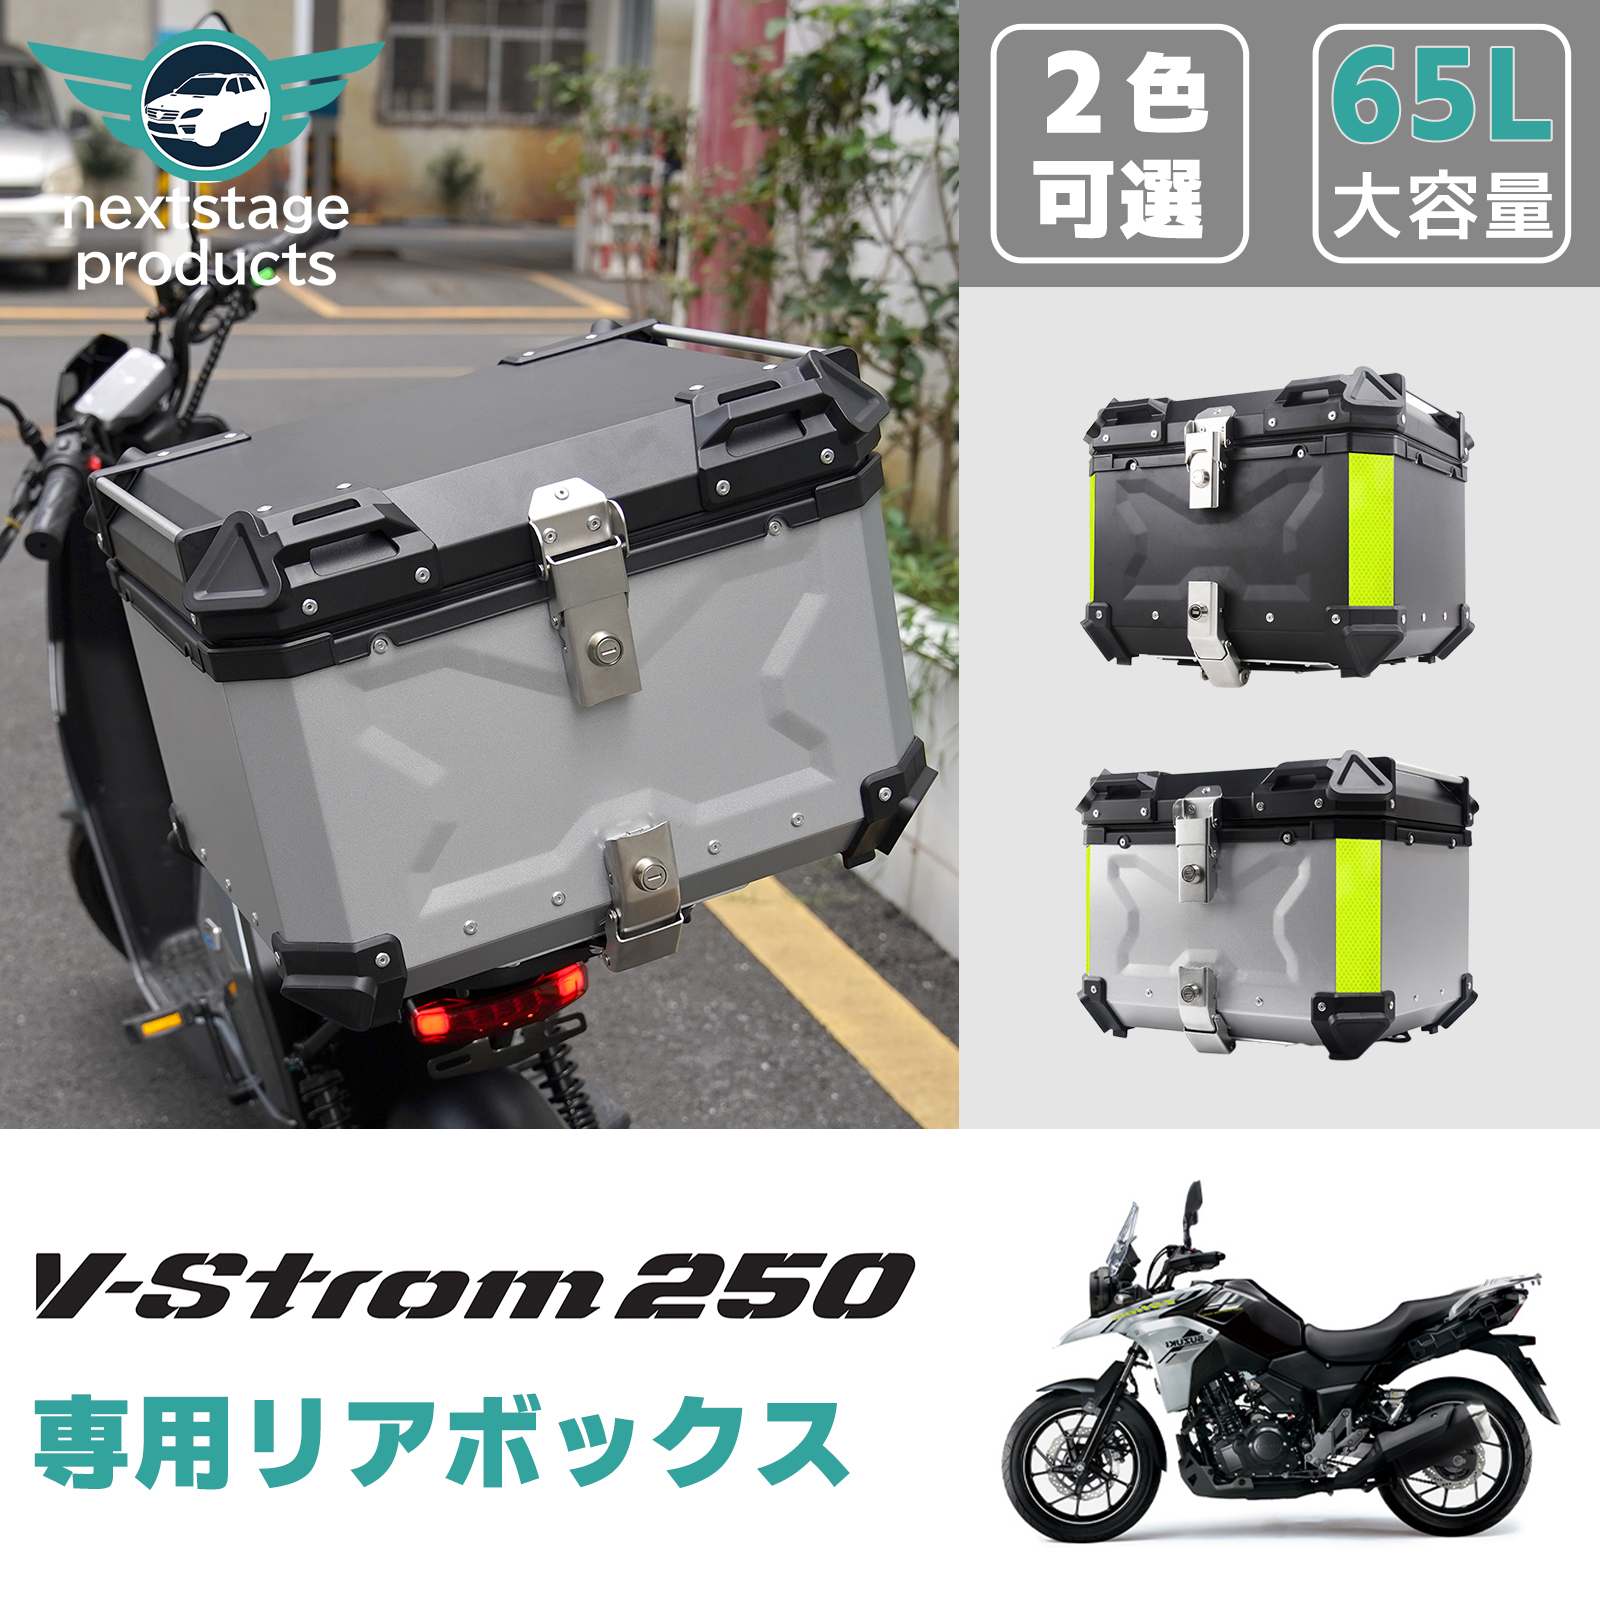 スズキ Vストローム 250 リアボックス 65L 高品質 バイク アルミ製 大容量 バイク用 防水 耐衝撃 トップケース リアケース バイクキャリー  着脱可能 鍵付 汎用